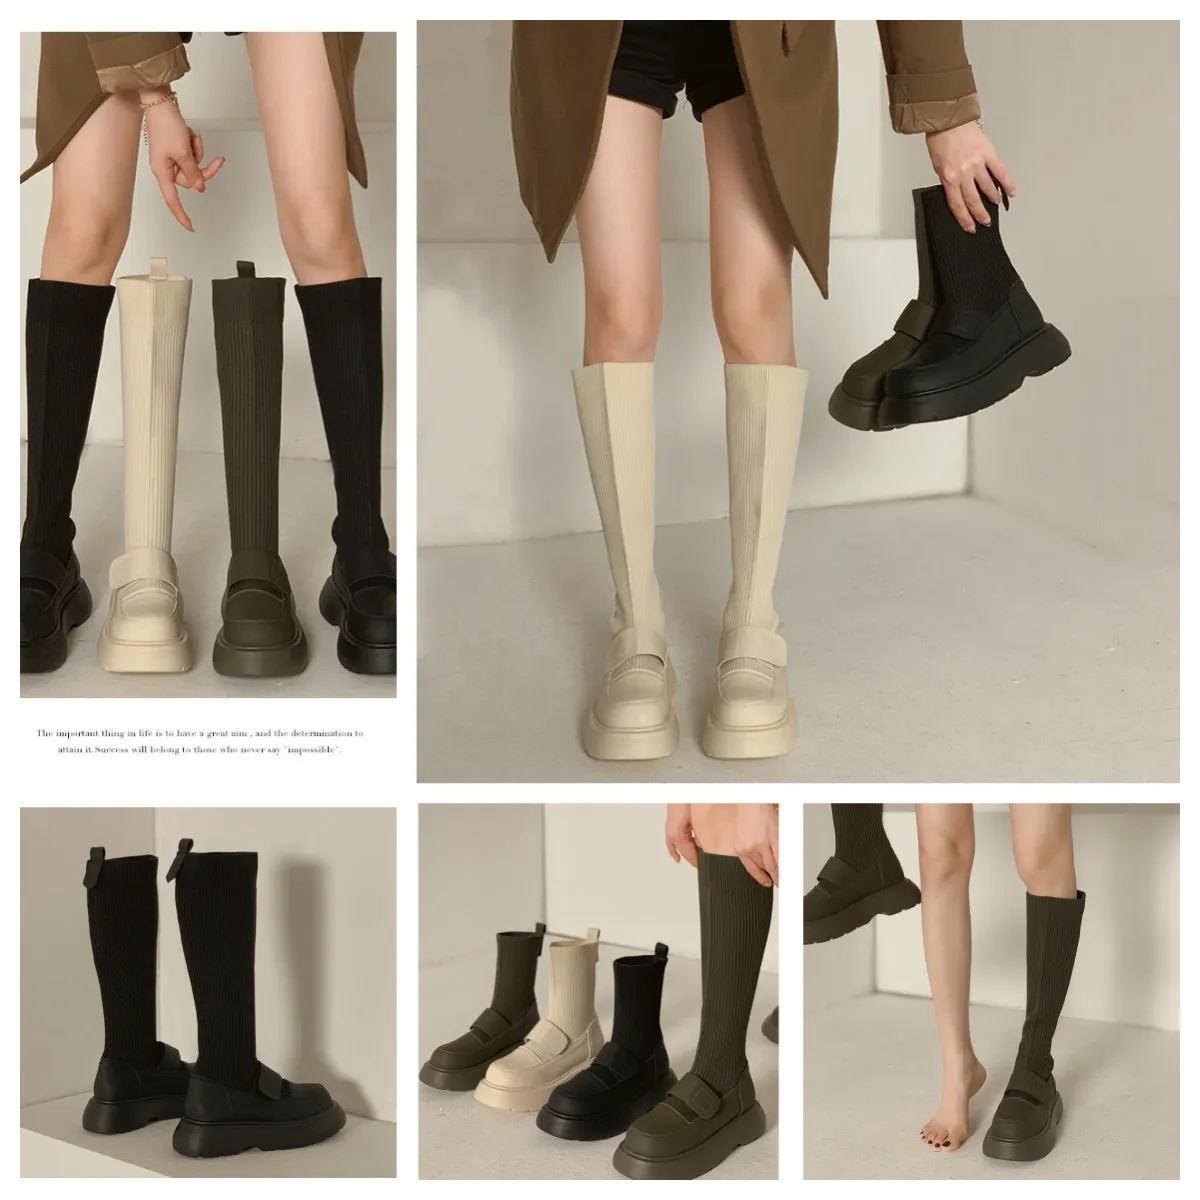 Sapatos de grife tênis esportes caminhadas sapatos botas altas botas clássico antiderrapante softs feminino gai 35-48 eur confortável